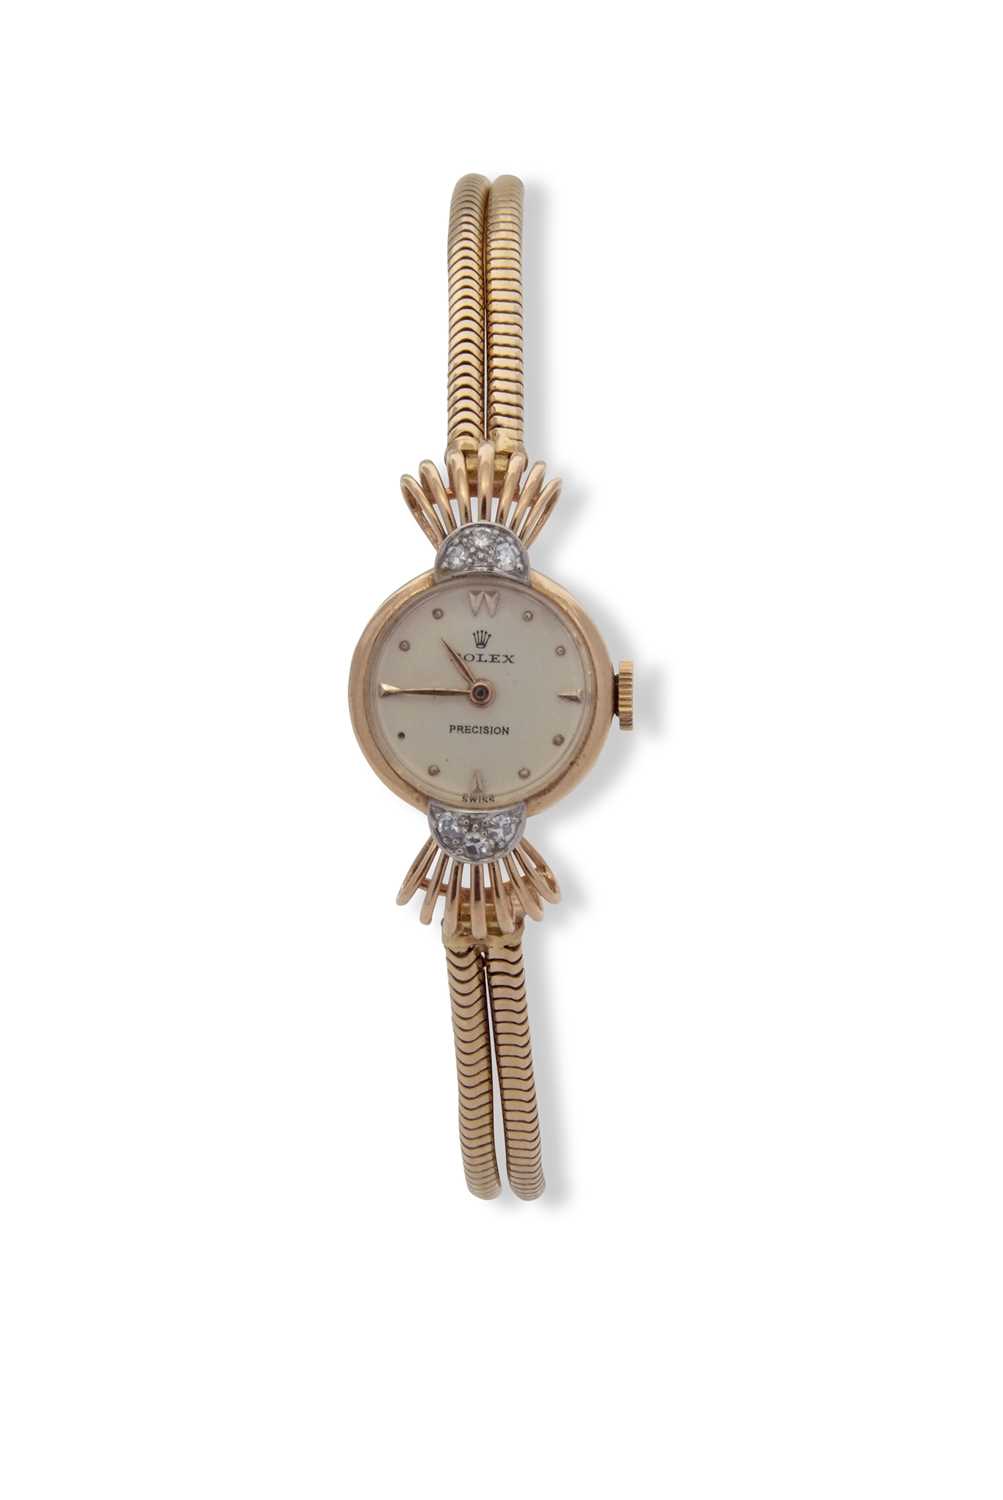 Ladies third/fourth quarter of 20th century hallmarked 18ct gold cased Rolex Precision wrist watch